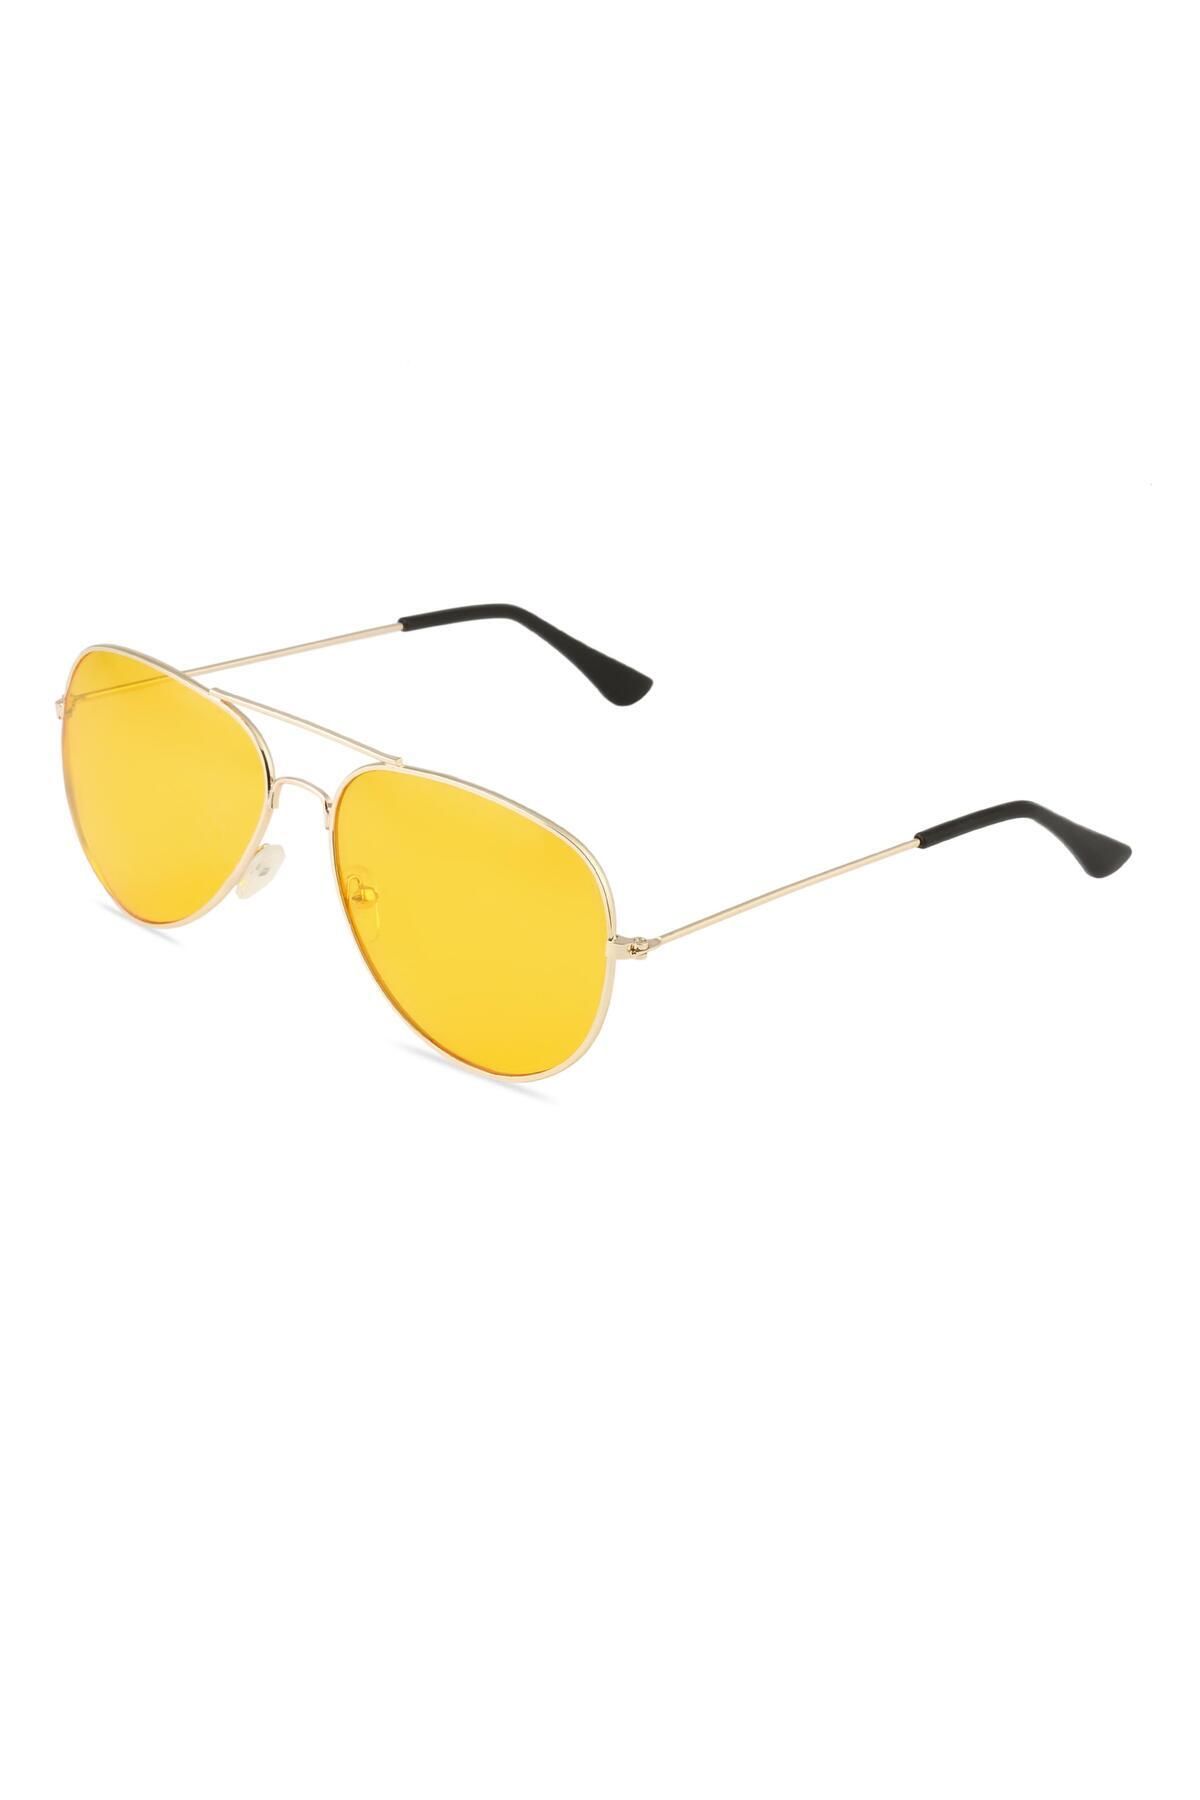 TomyHelf Damla Tasarım Gold Çerçeve Gece Görüşlü Sarı Cam Unisex Gözlük